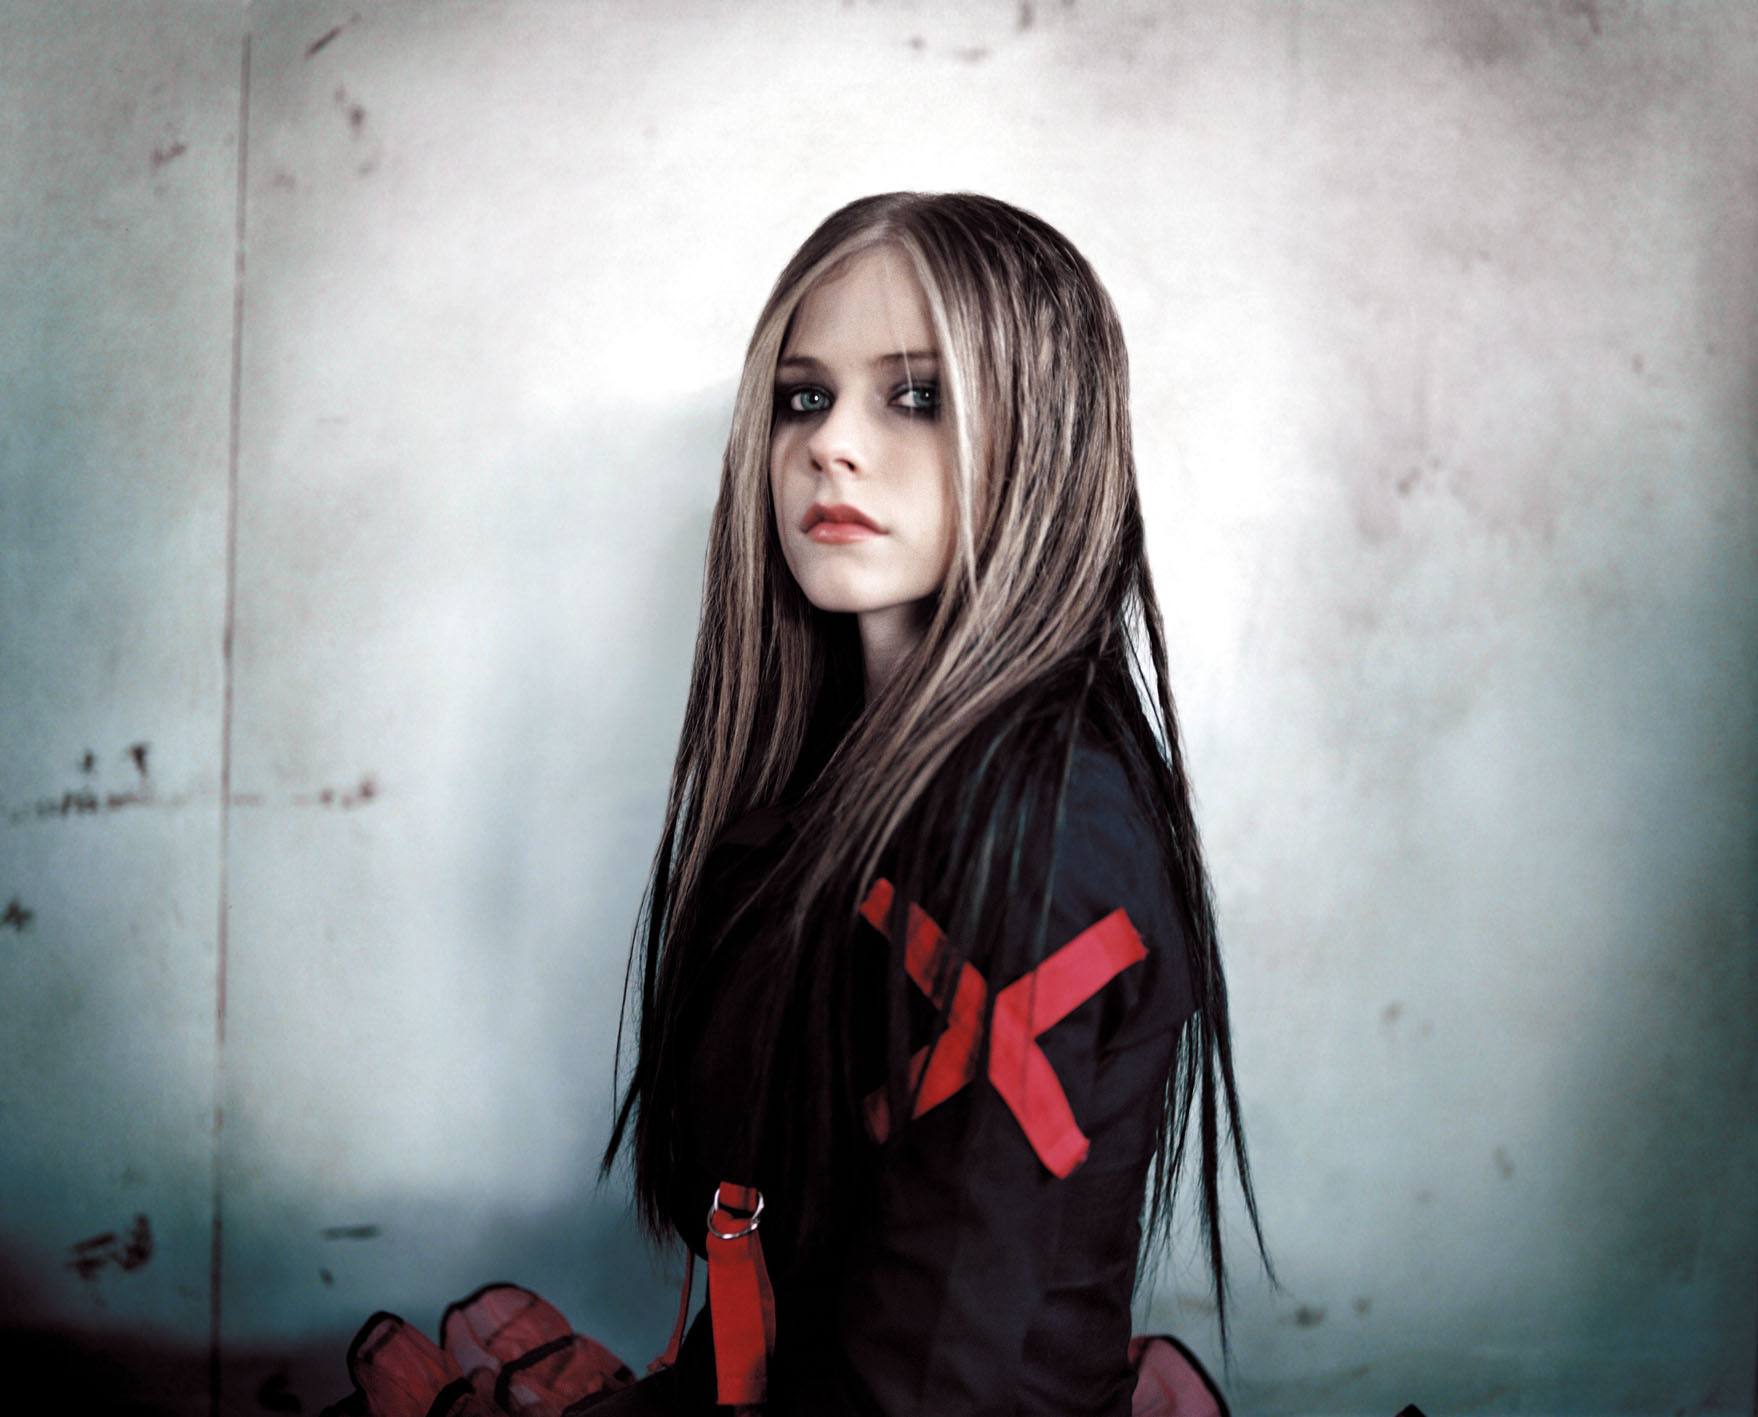 壁纸1600×1200艾薇儿 Avril Lavigne 壁纸107壁纸,艾薇儿 Avril Lavigne壁纸图片-明星壁纸-明星图片素材-桌面壁纸